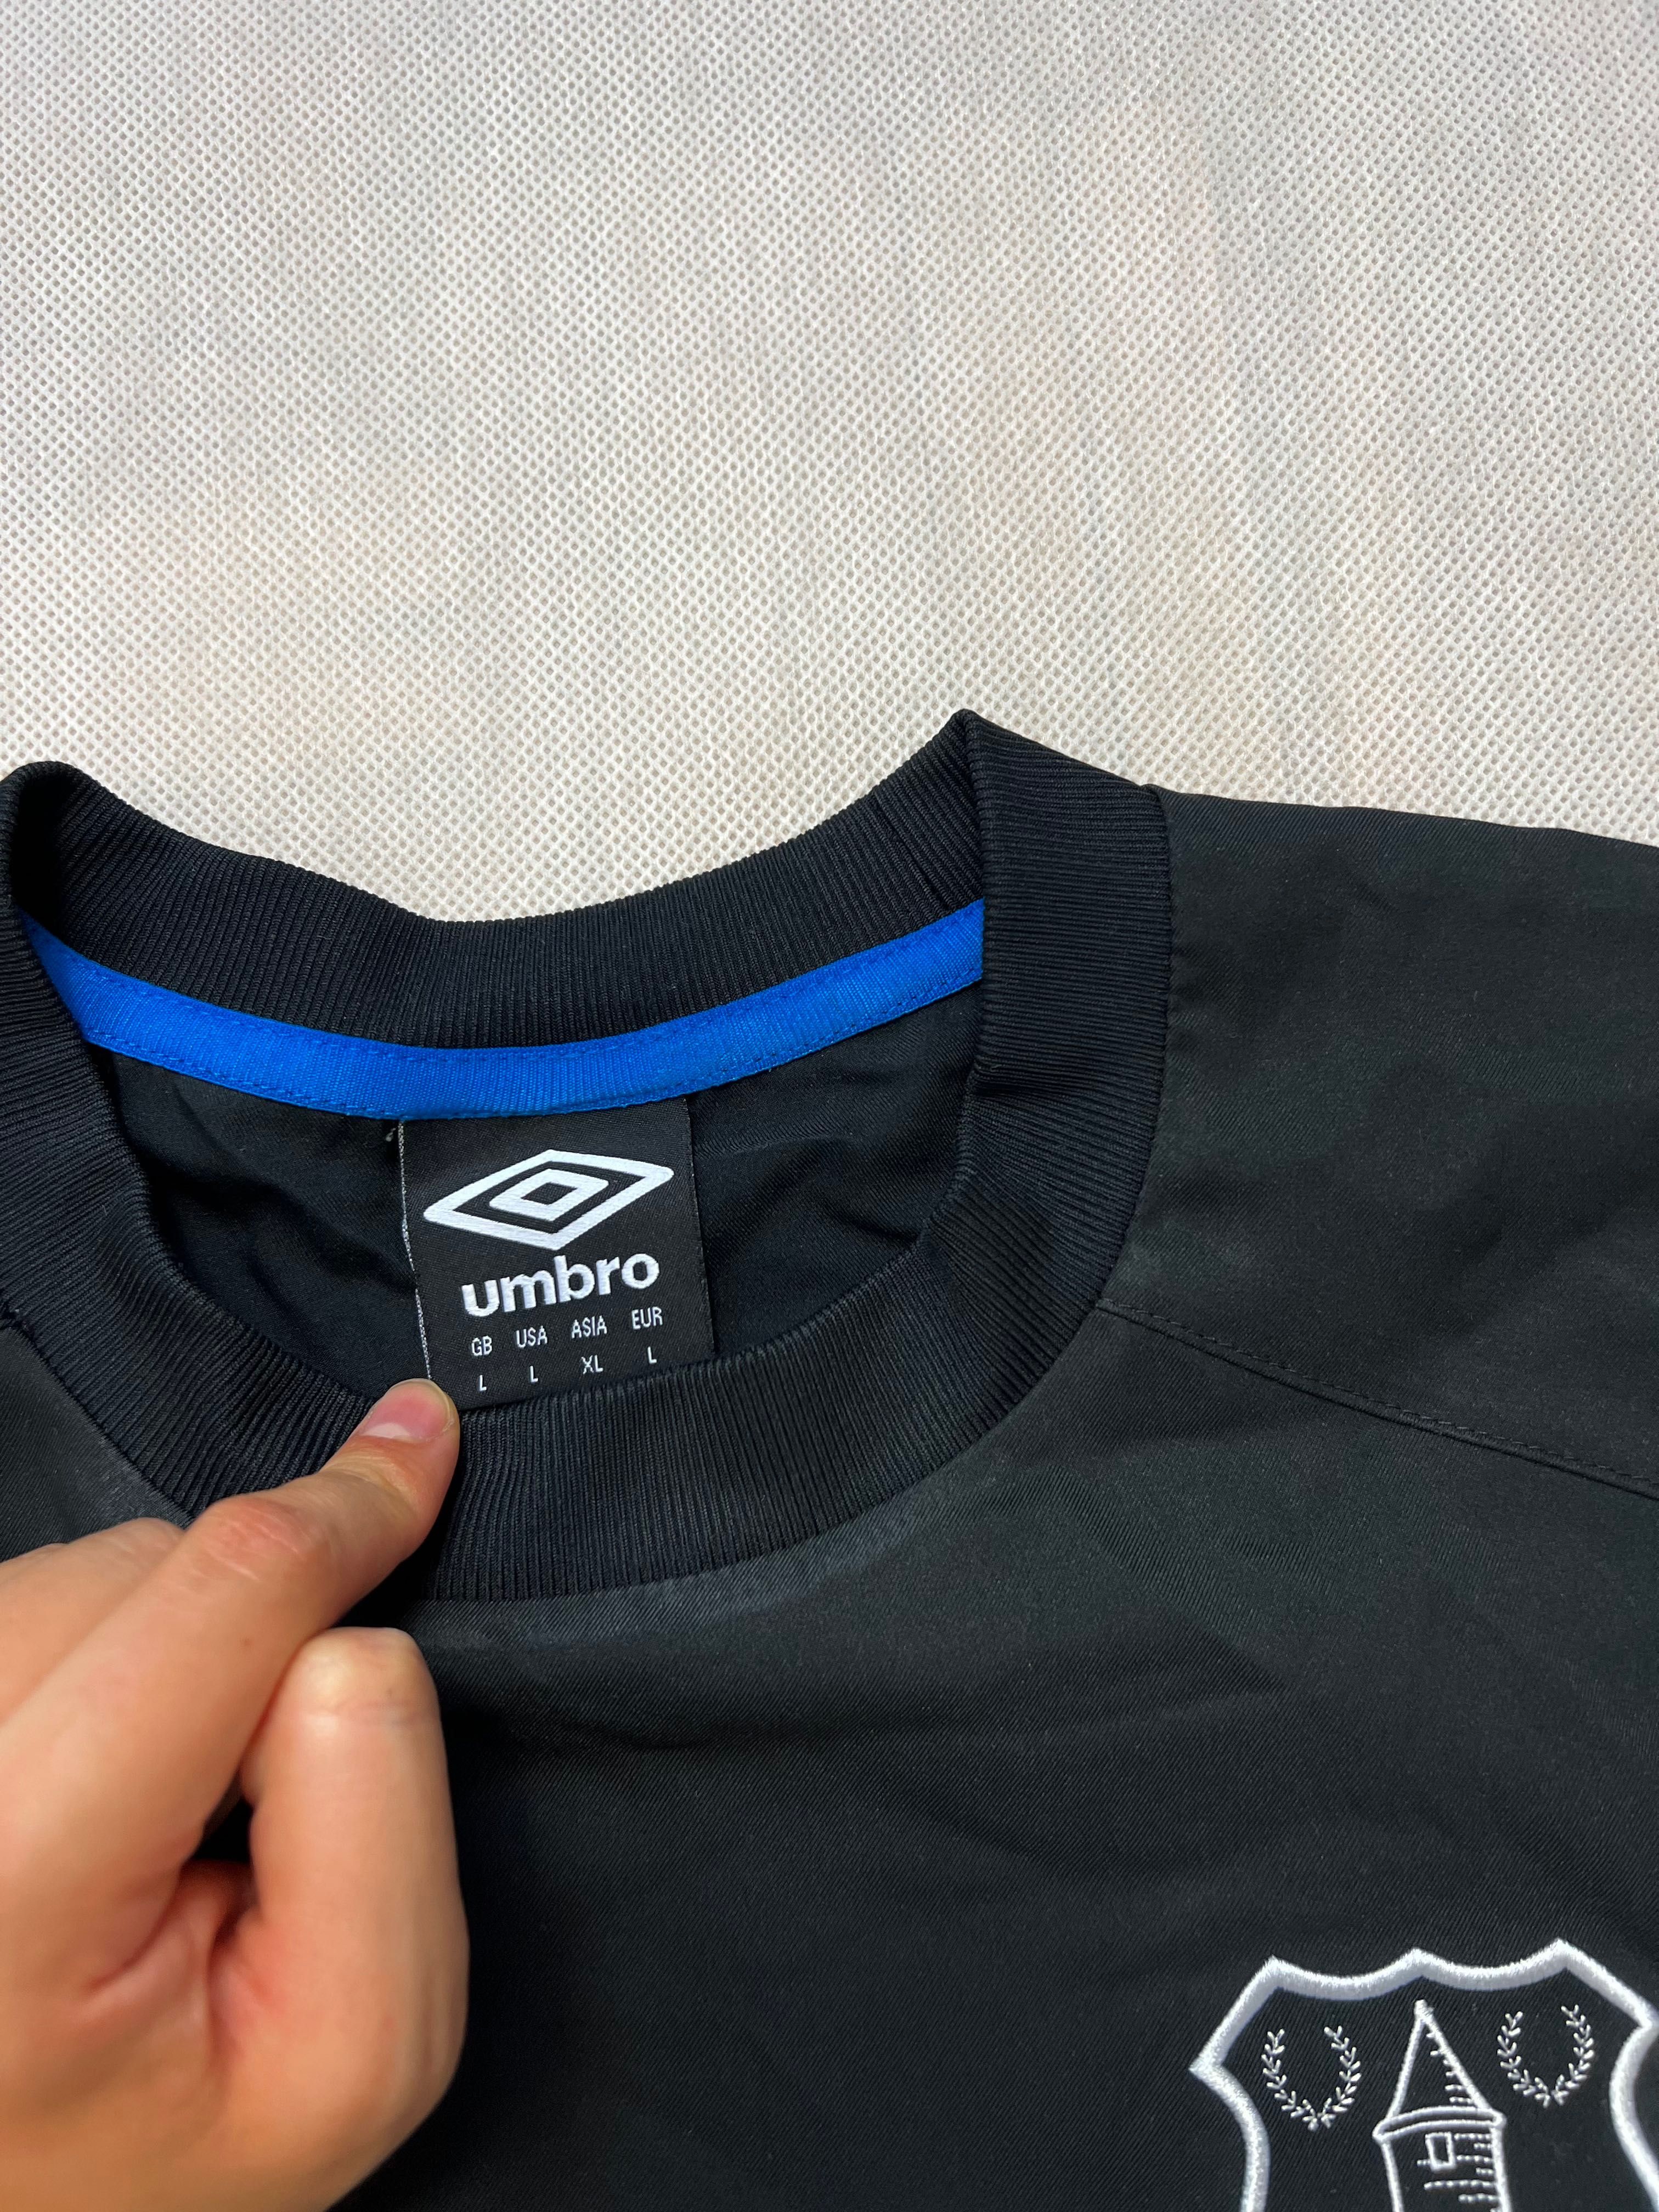 Bluza Umbro Everton football logo